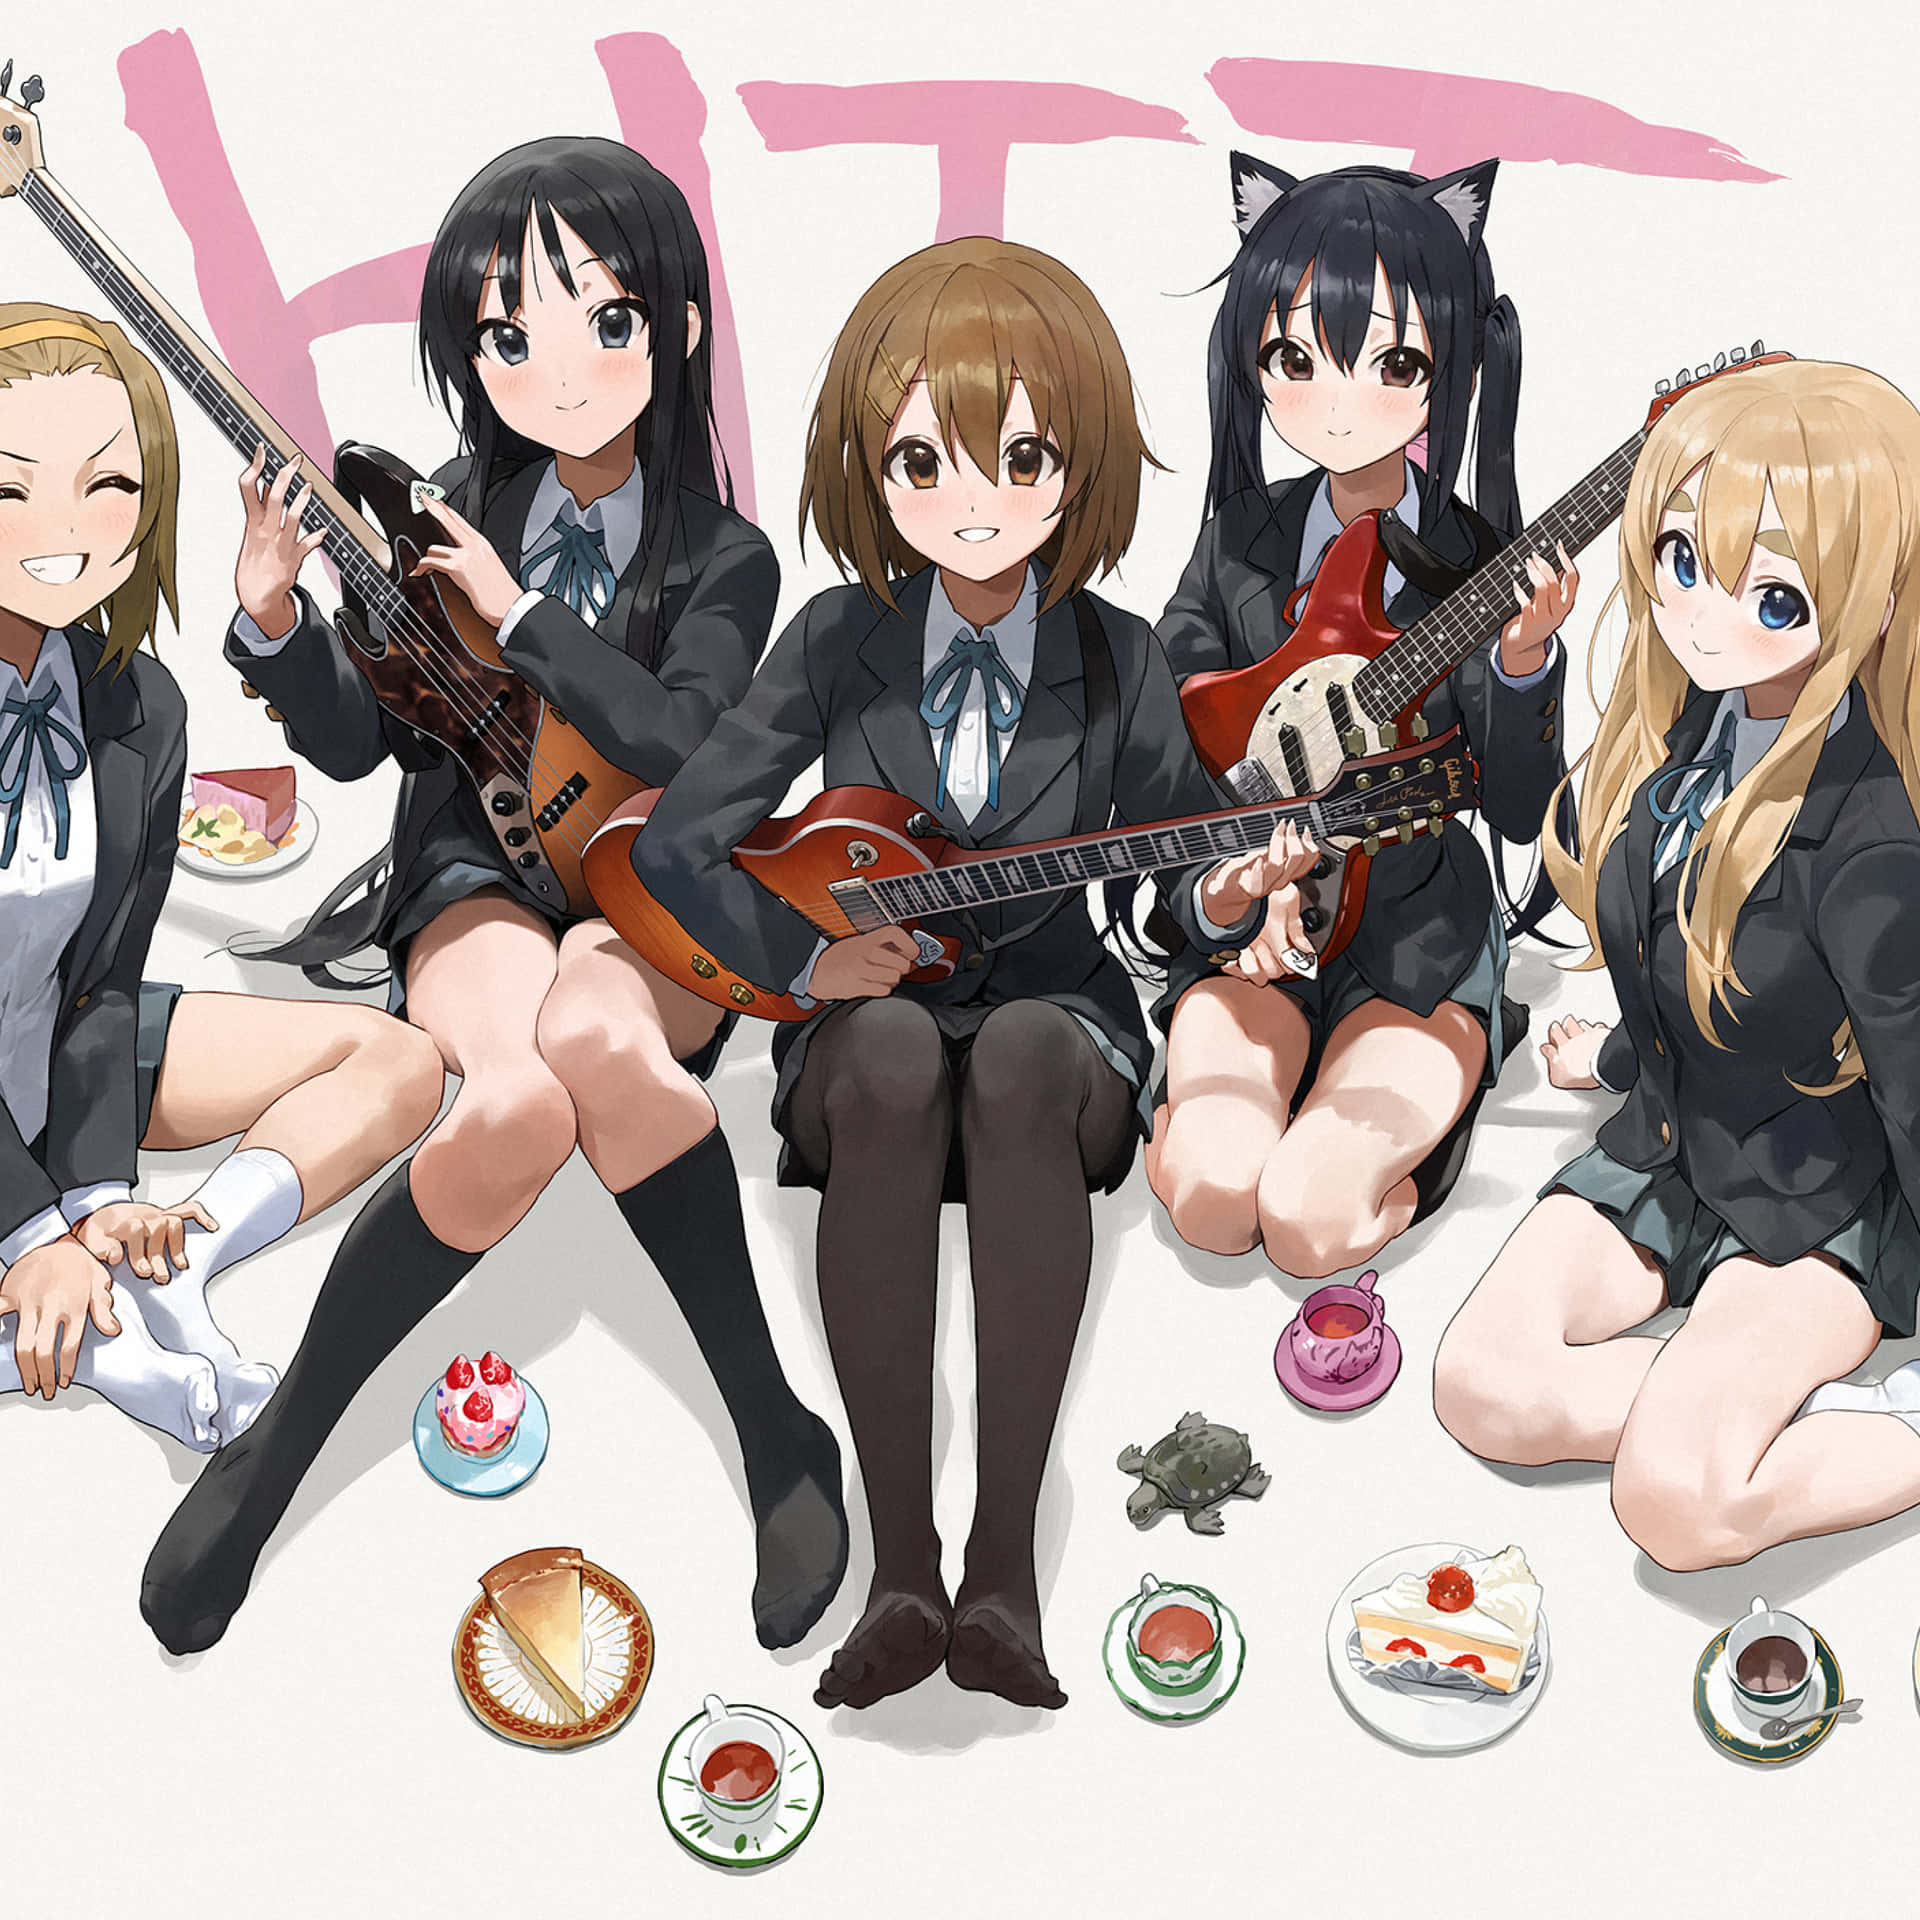 K-on Anime Group Wallpaper